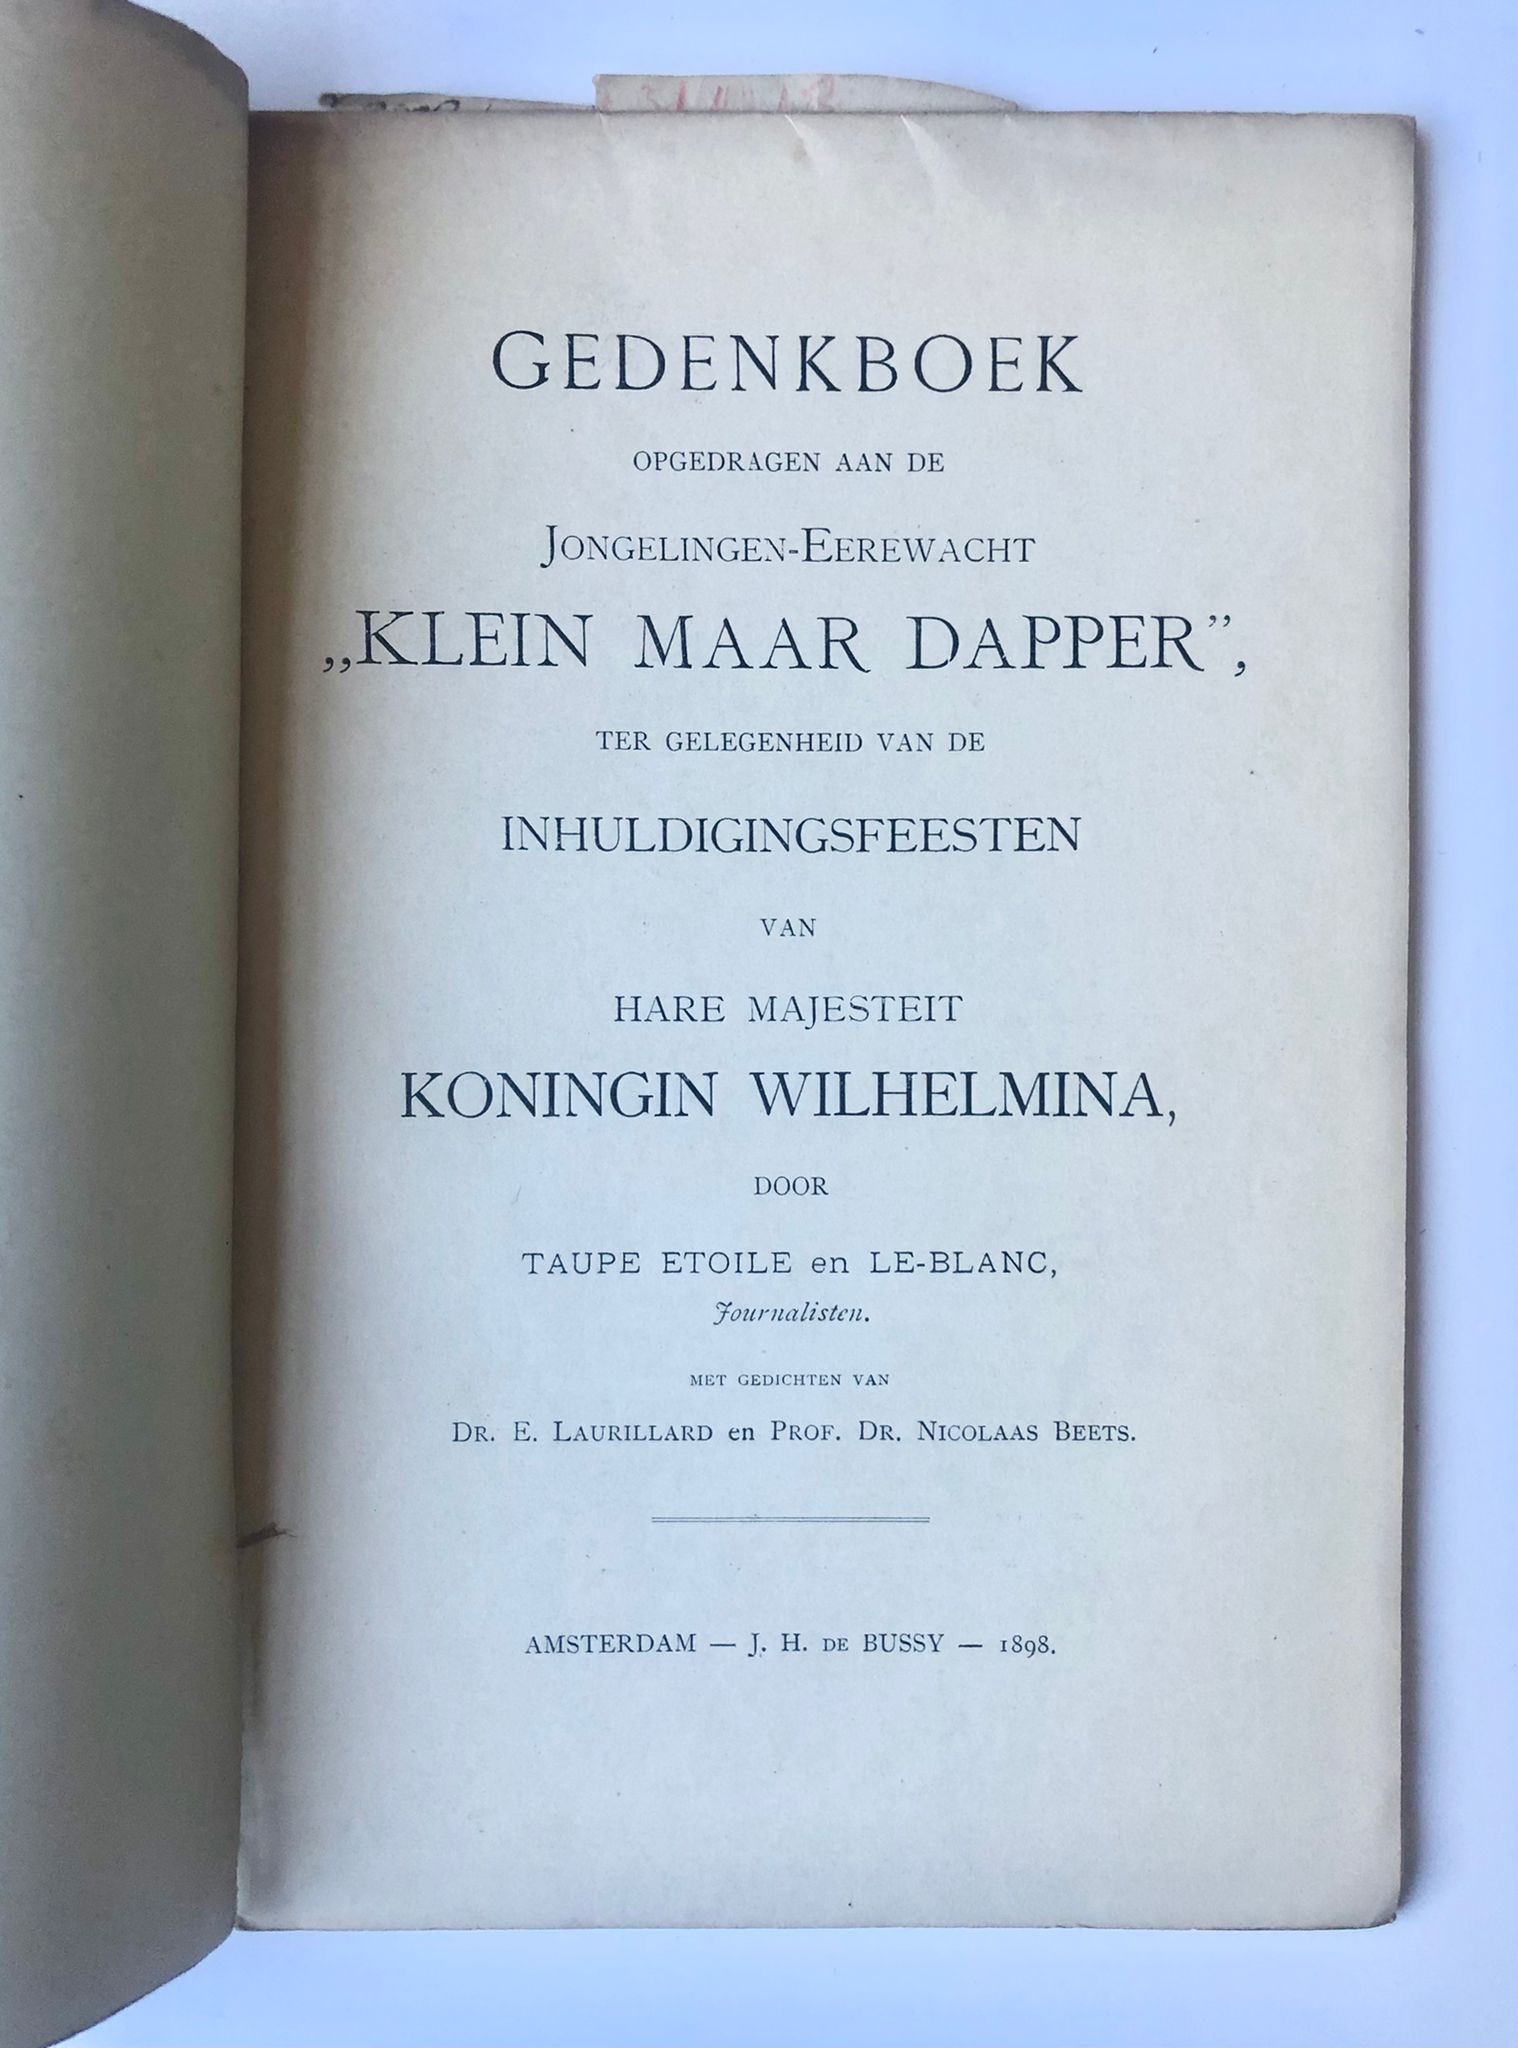 [Antique book 1898, Edam, Noord-Holland] Gedenkboek der Jongelingen-Eerewacht “Klein maar dapper”. Met gedichten van Dr. E. Laurillard en Prof. Dr. Nicolaas Beets. J. H. de Bussy, Amsterdam, 1898, 51 pp.